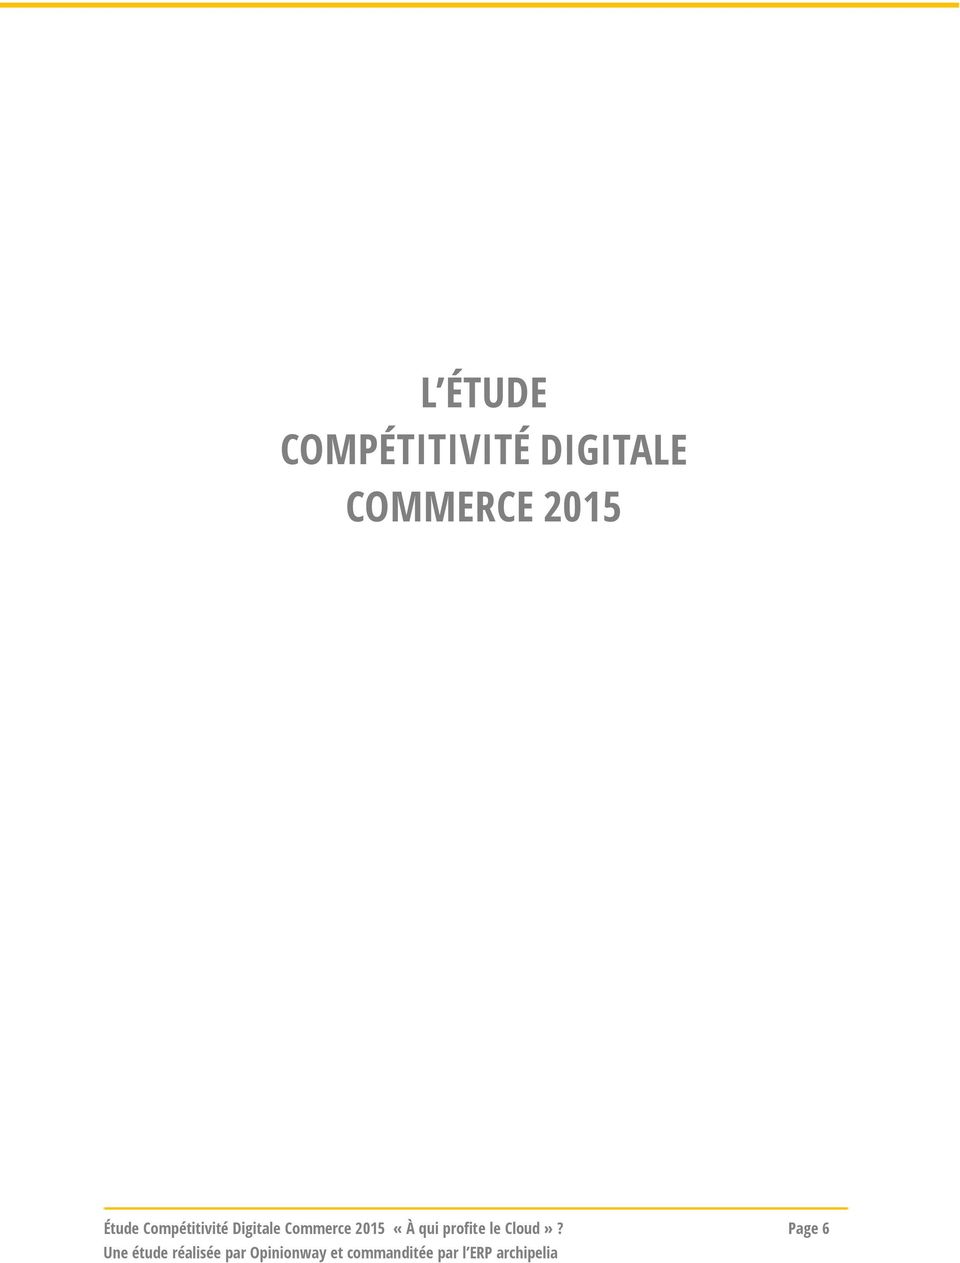 Compétitivité Digitale